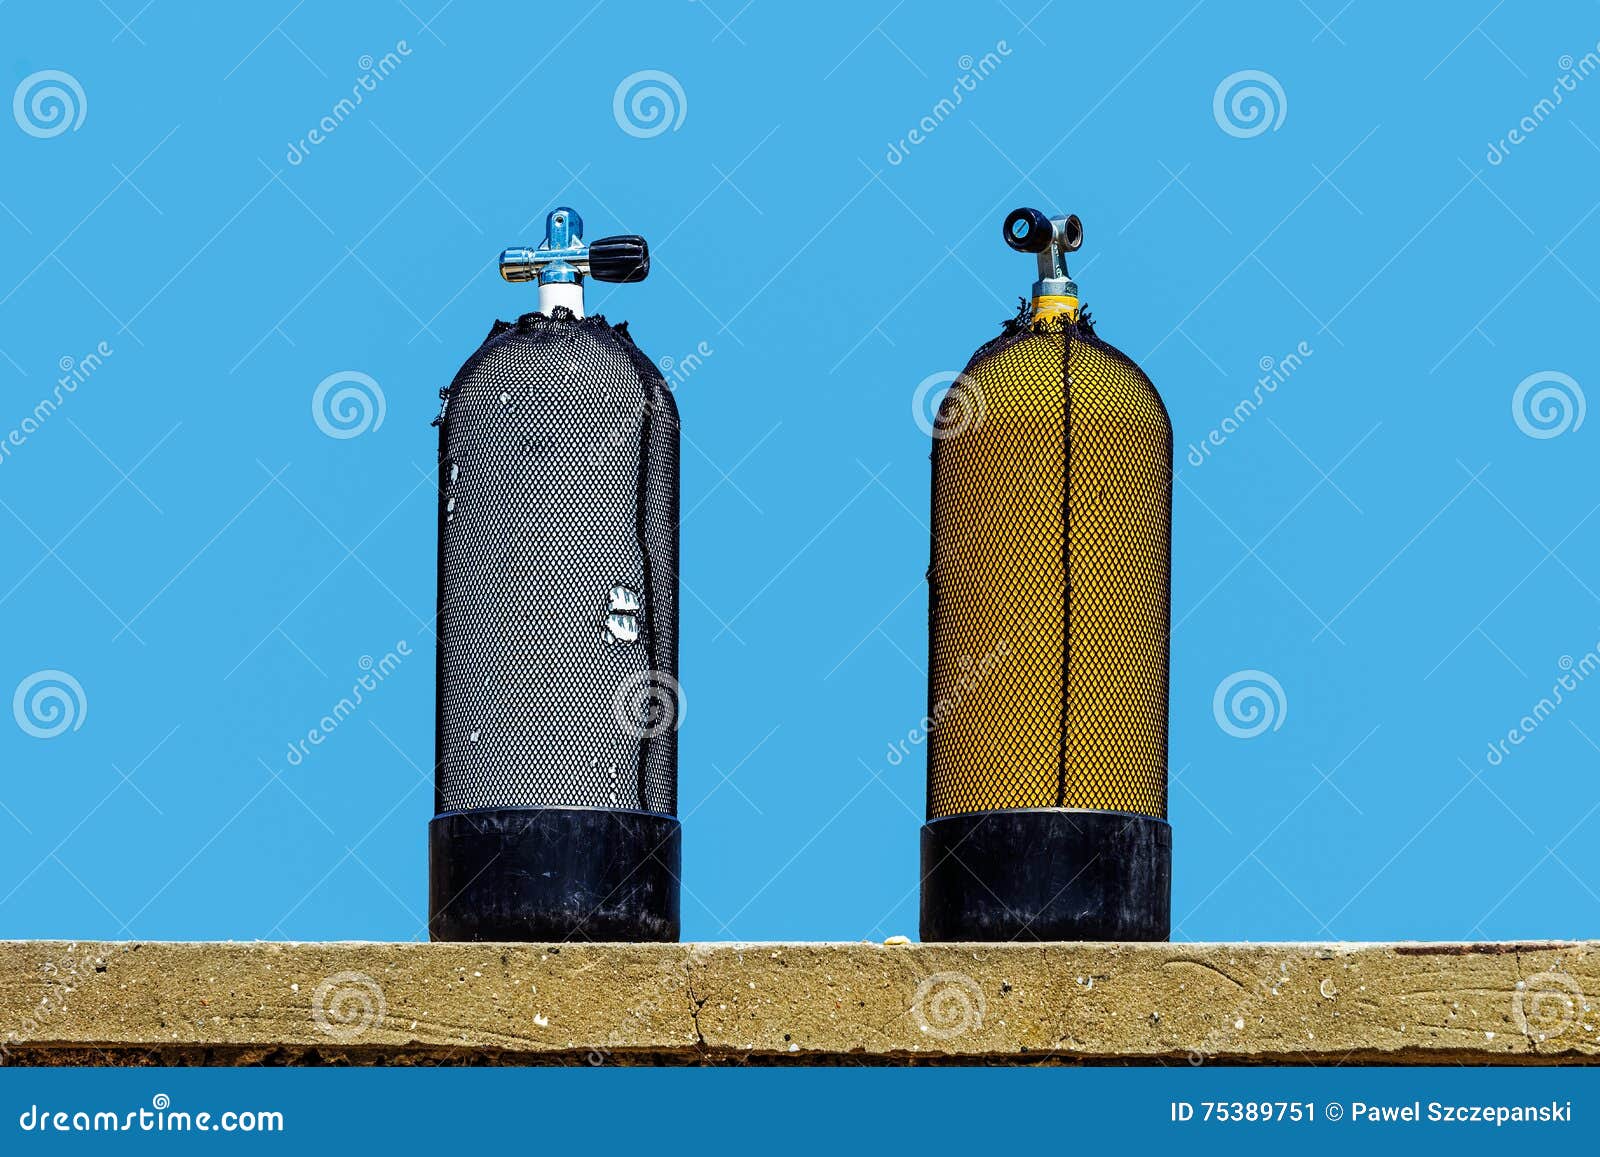 scuba diving oxygen tanks